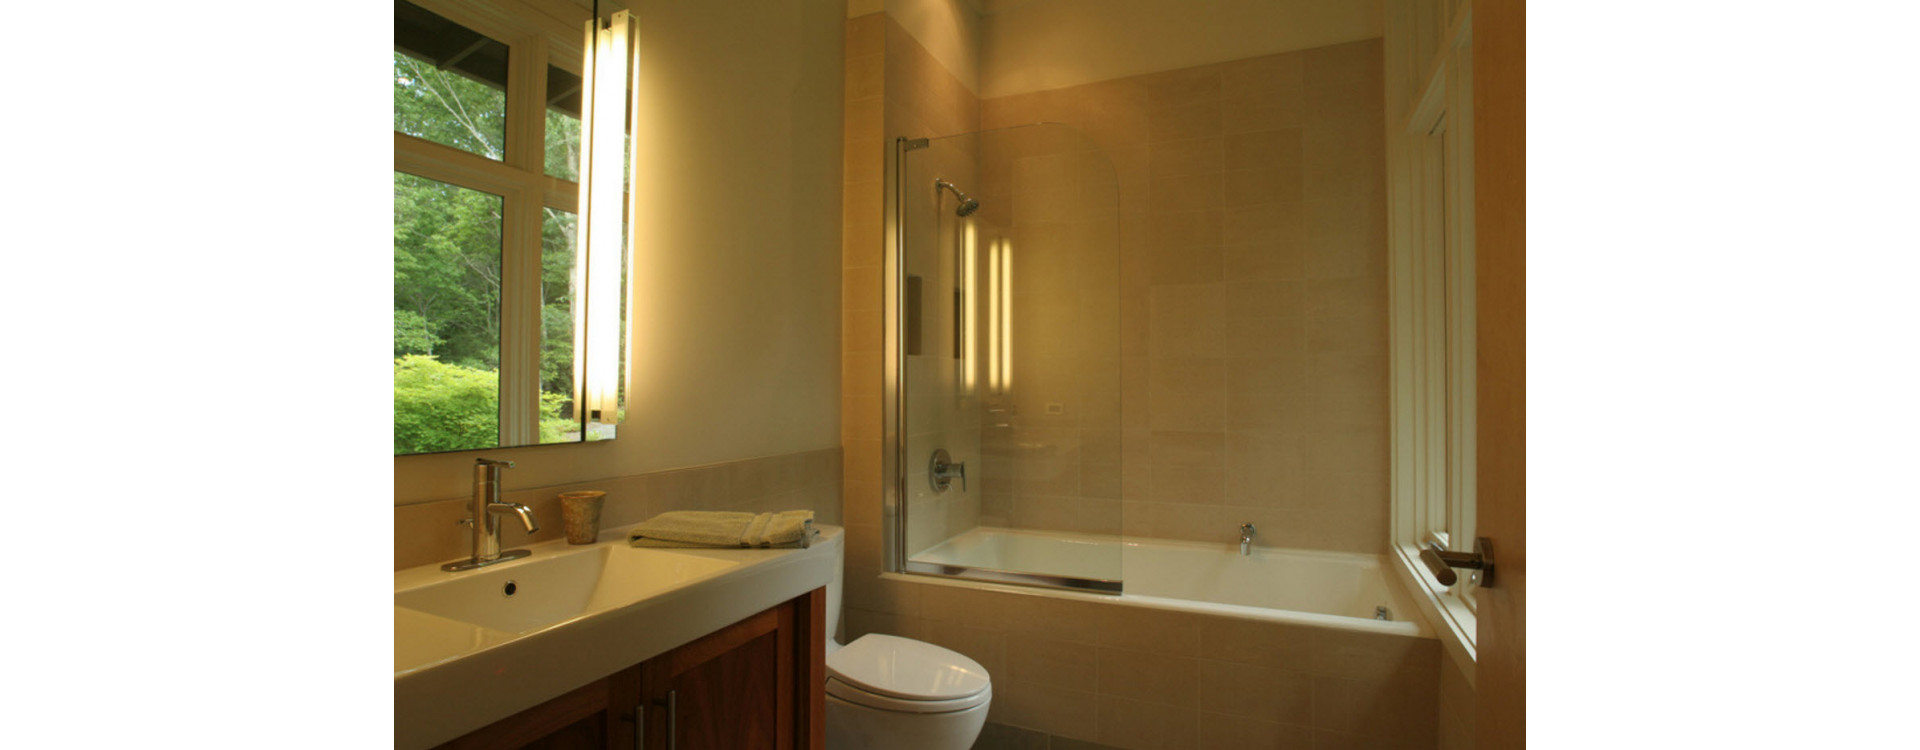 Ванная комната, актуальные идеи дизайна